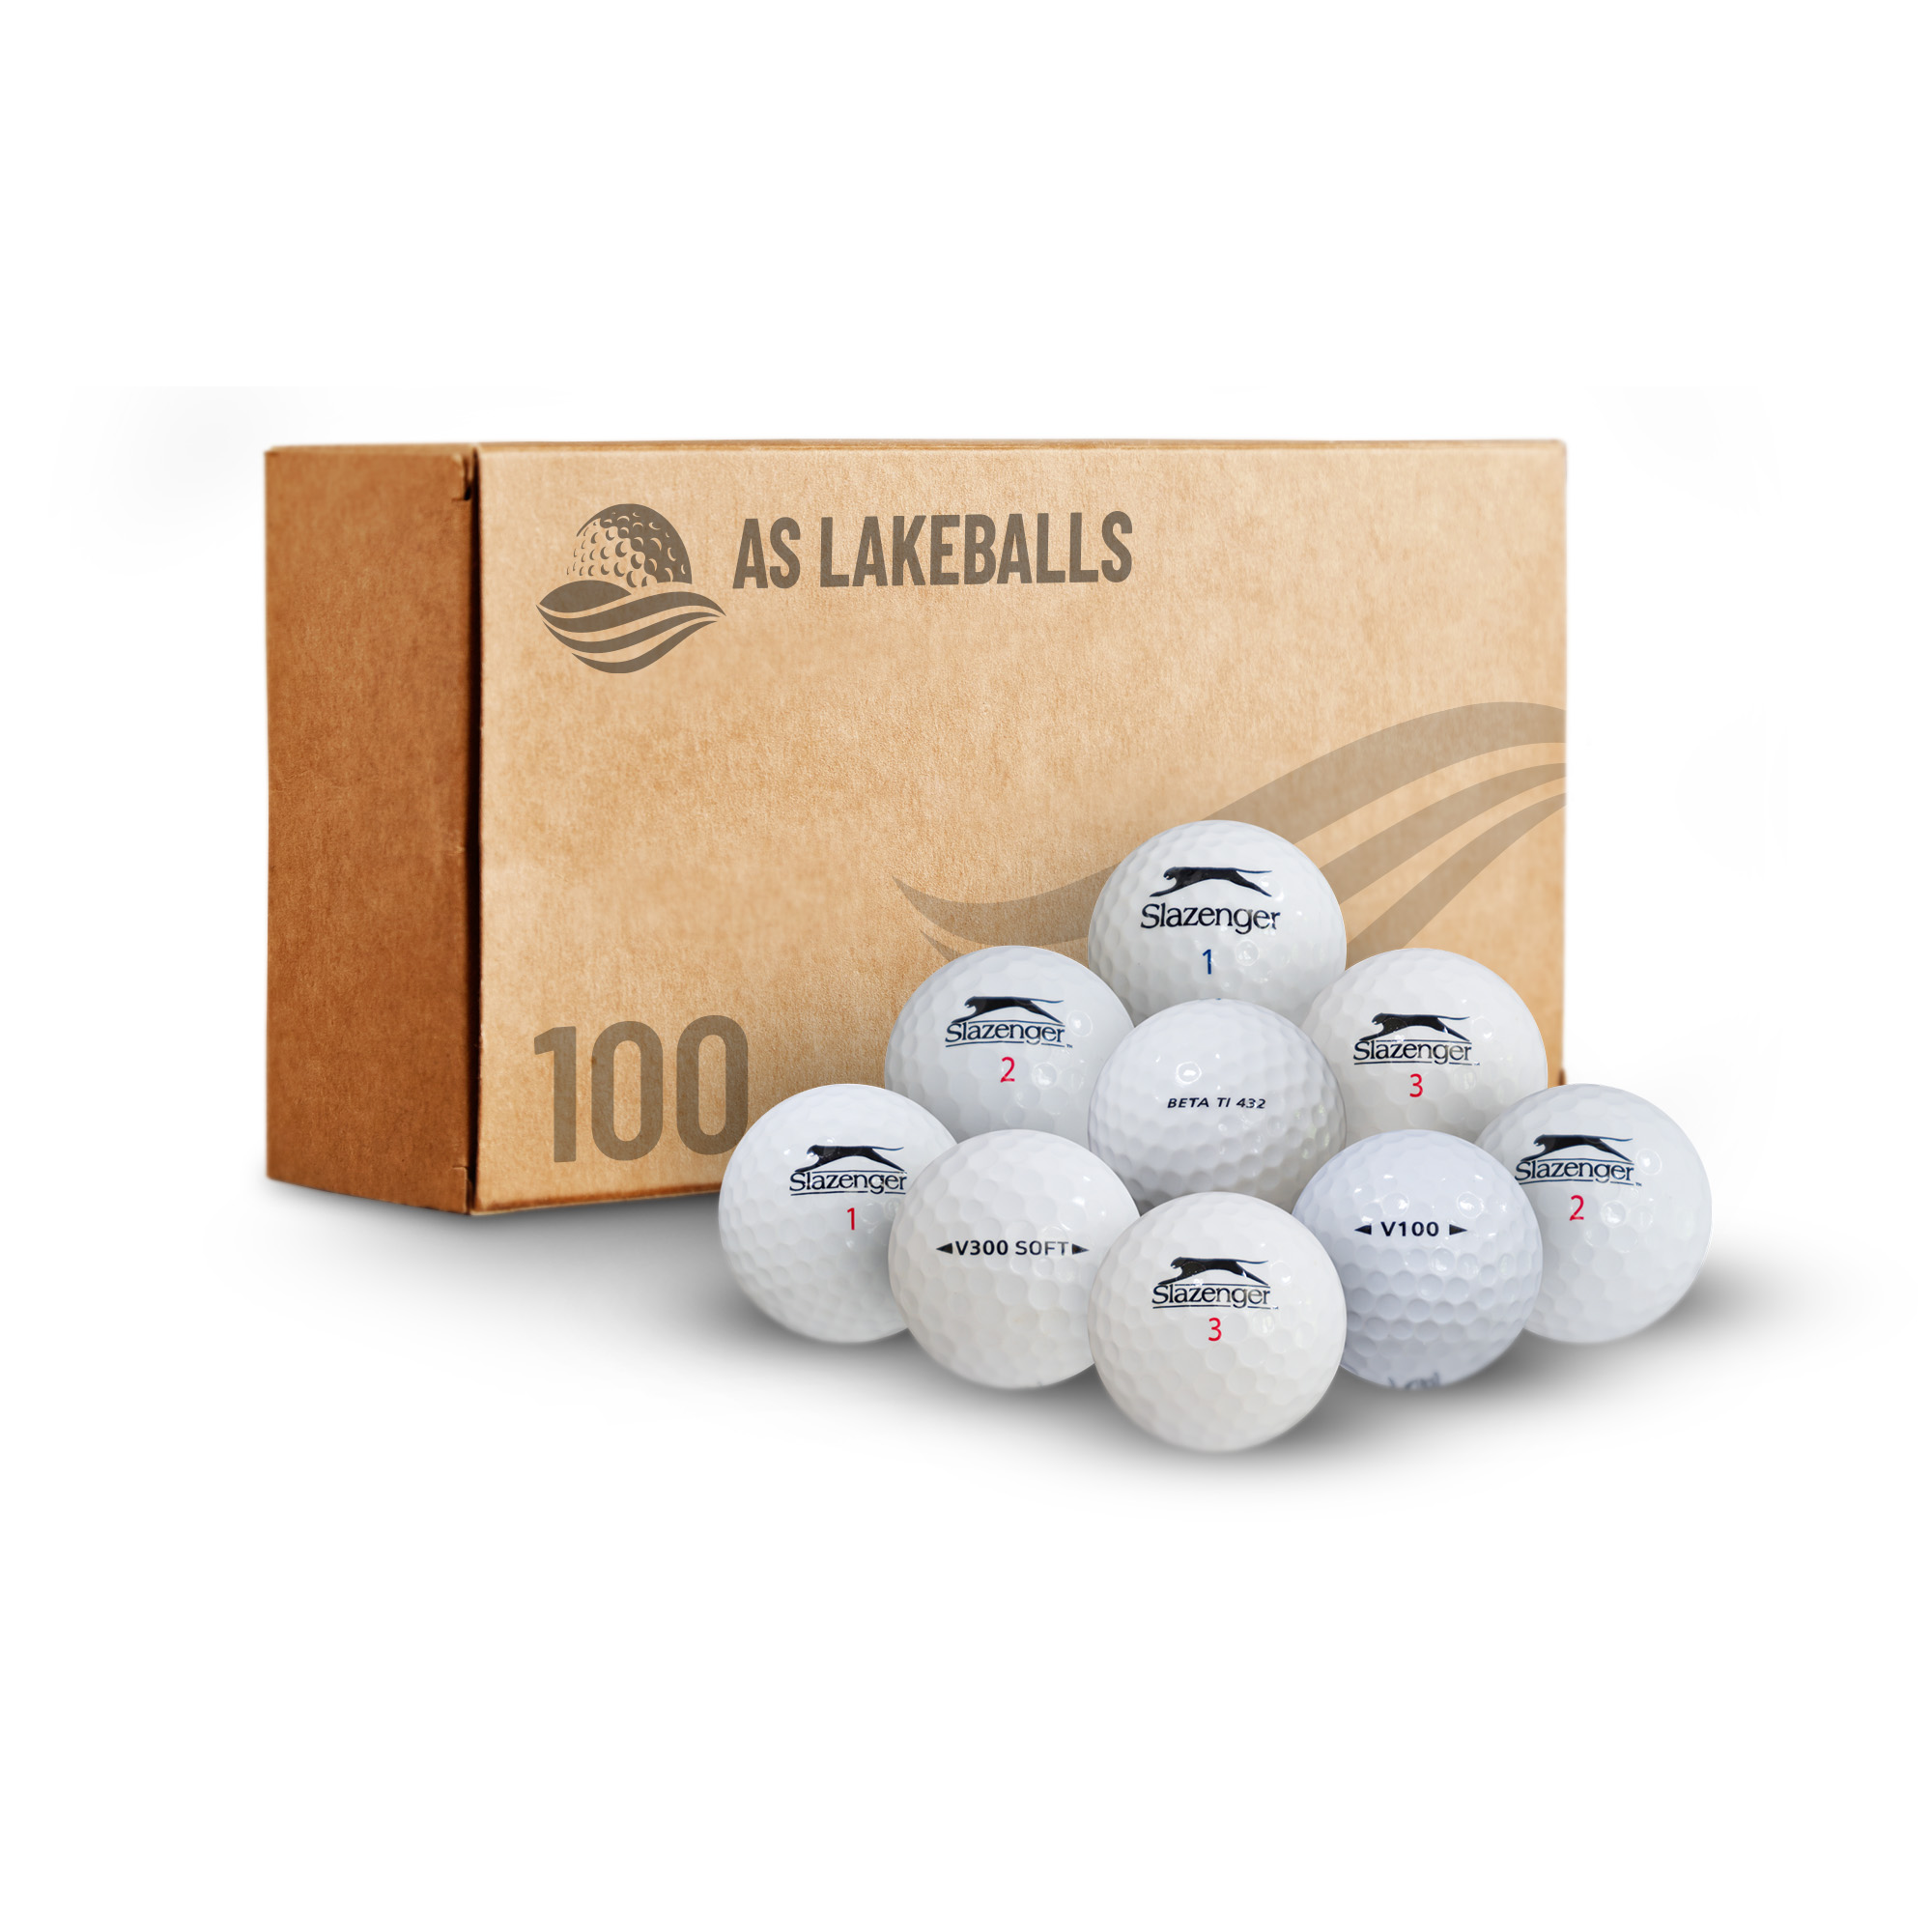 100 Slazenger Mix AA-AAA bei AS Lakeballs günstig kaufen